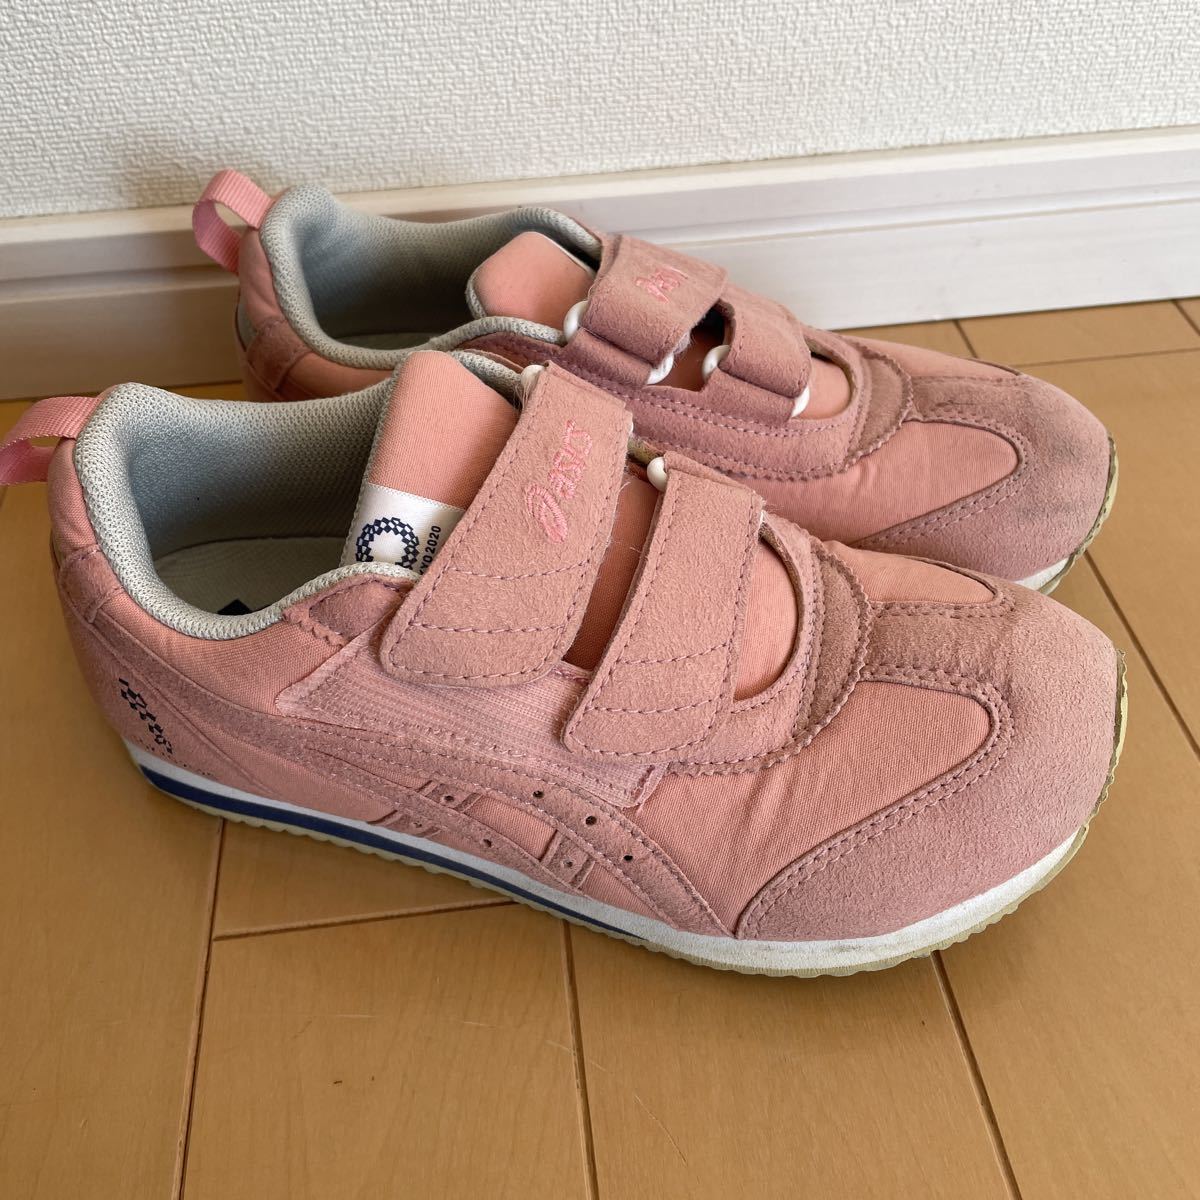  Asics asics Tokyo 2020 Olympic эмблема a Ida ho MINI спортивные туфли спортивная обувь 21.5cm Tokyo . колесо незначительный розовый Sakura цвет 